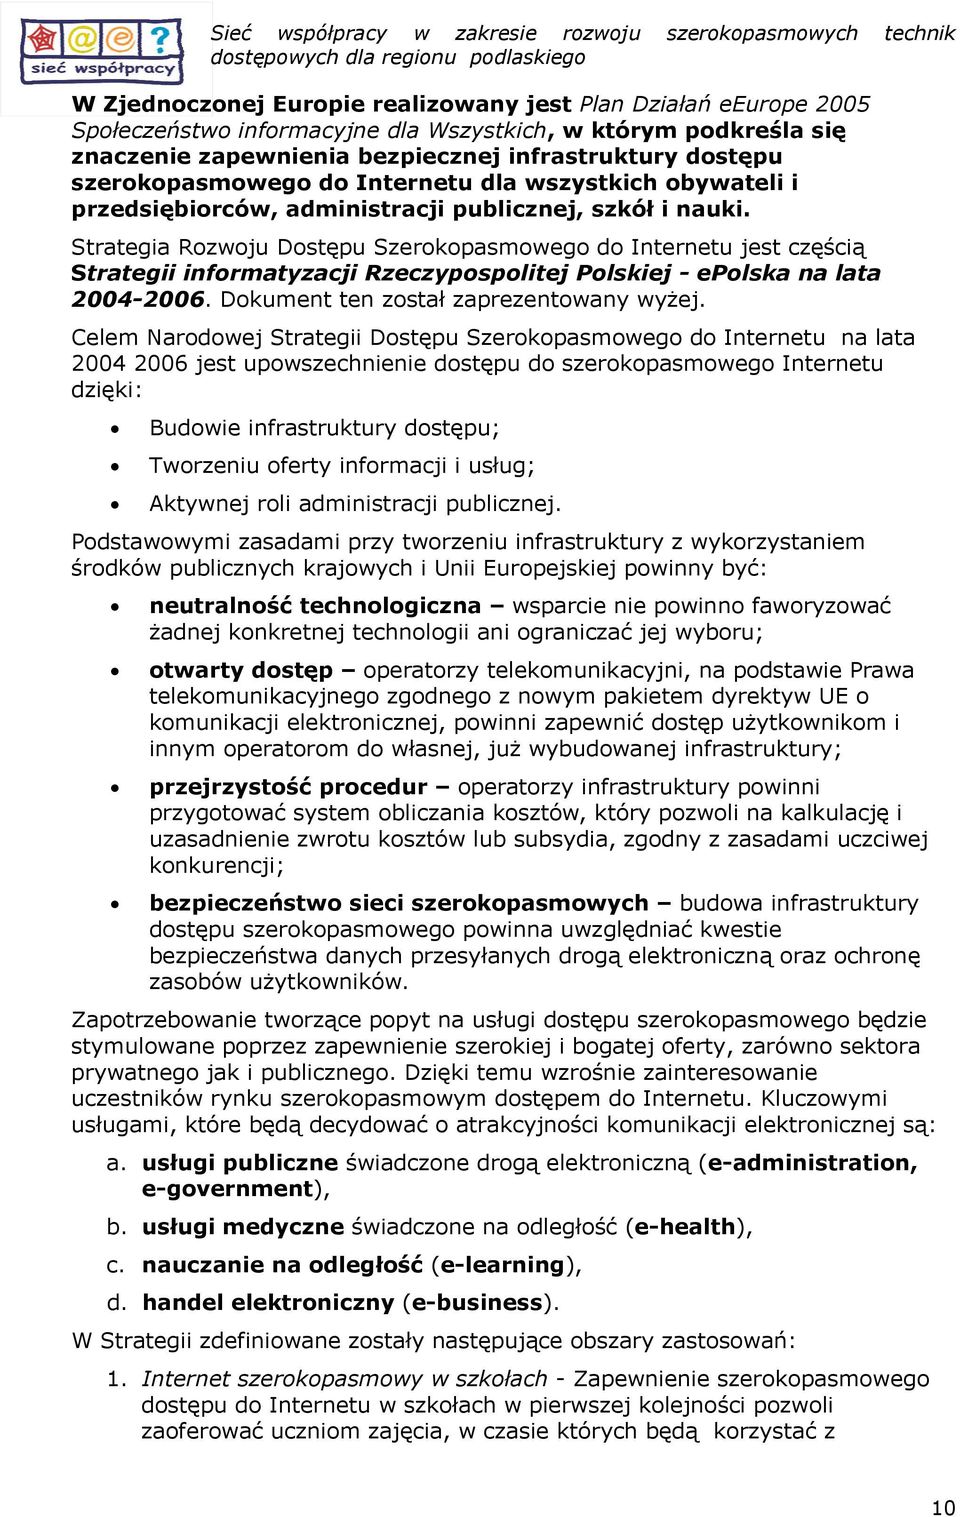 Strategia Rzwju Dstępu Szerkpasmweg d Internetu jest częścią Strategii infrmatyzacji Rzeczypsplitej Plskiej - eplska na lata 2004-2006. Dkument ten zstał zaprezentwany wyżej.